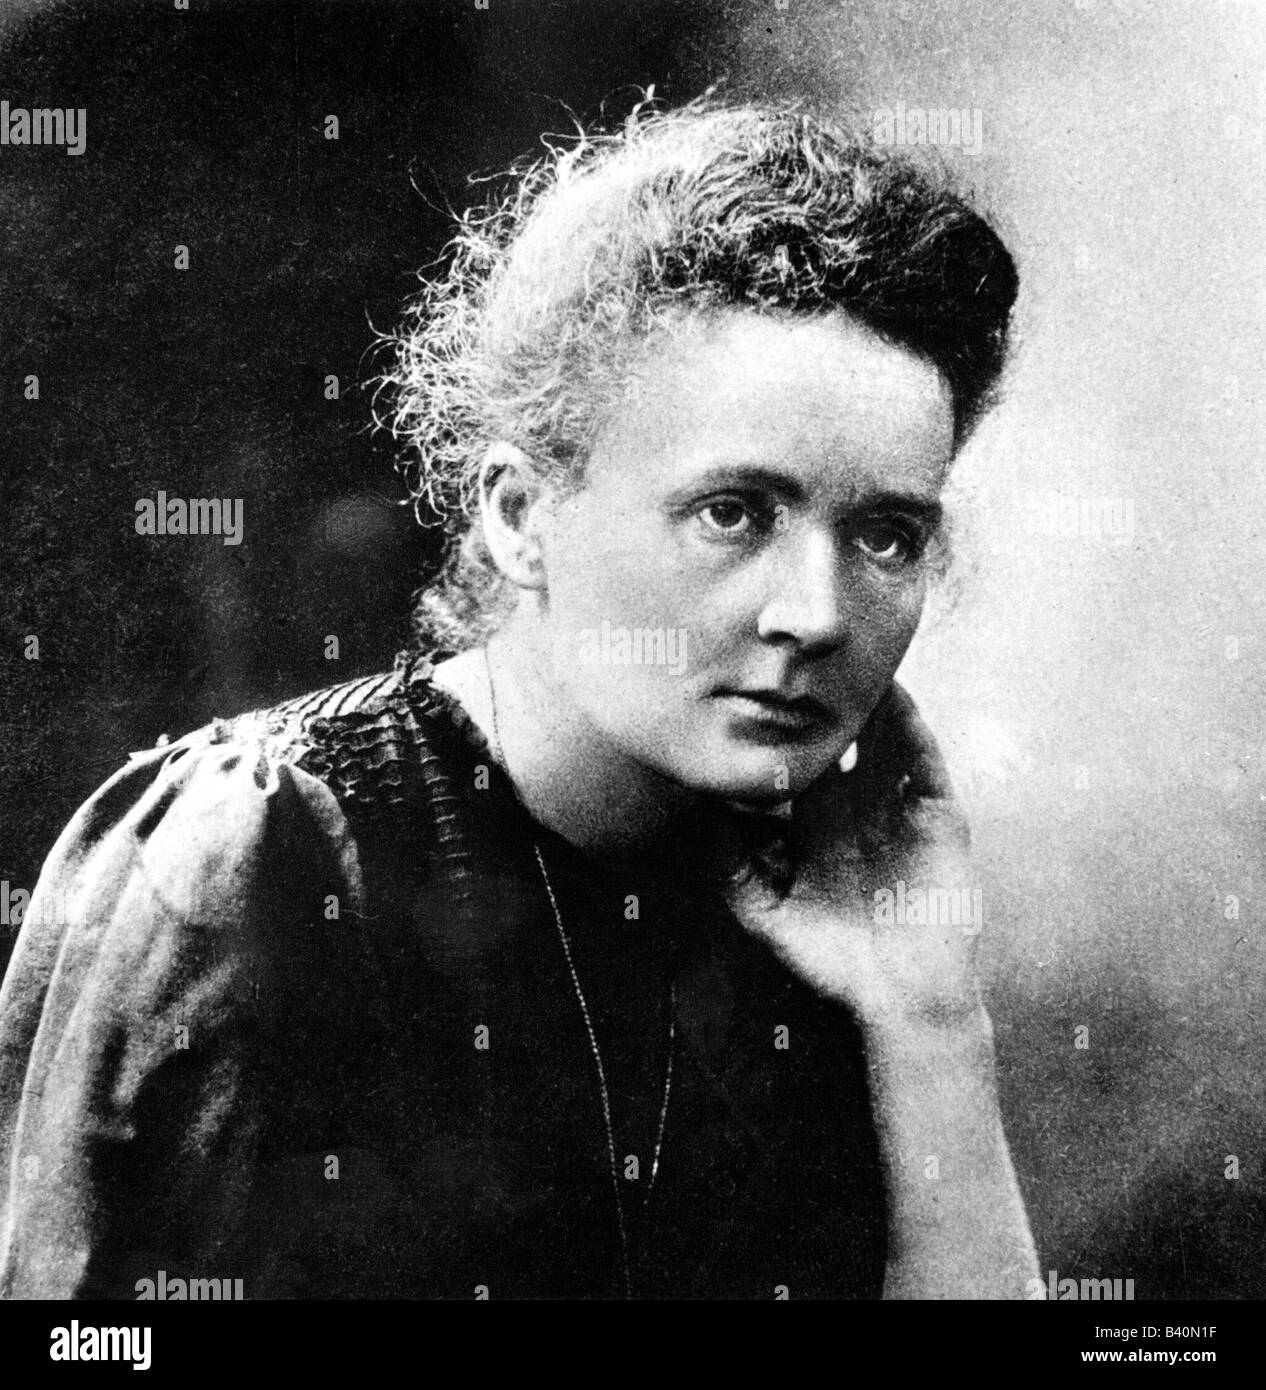 Curie, Marie, (eig. Marya Sklodowska), 7.11.1867 - 4.7.1934, Polish chemist, portrait, late 19th century, Stock Photo